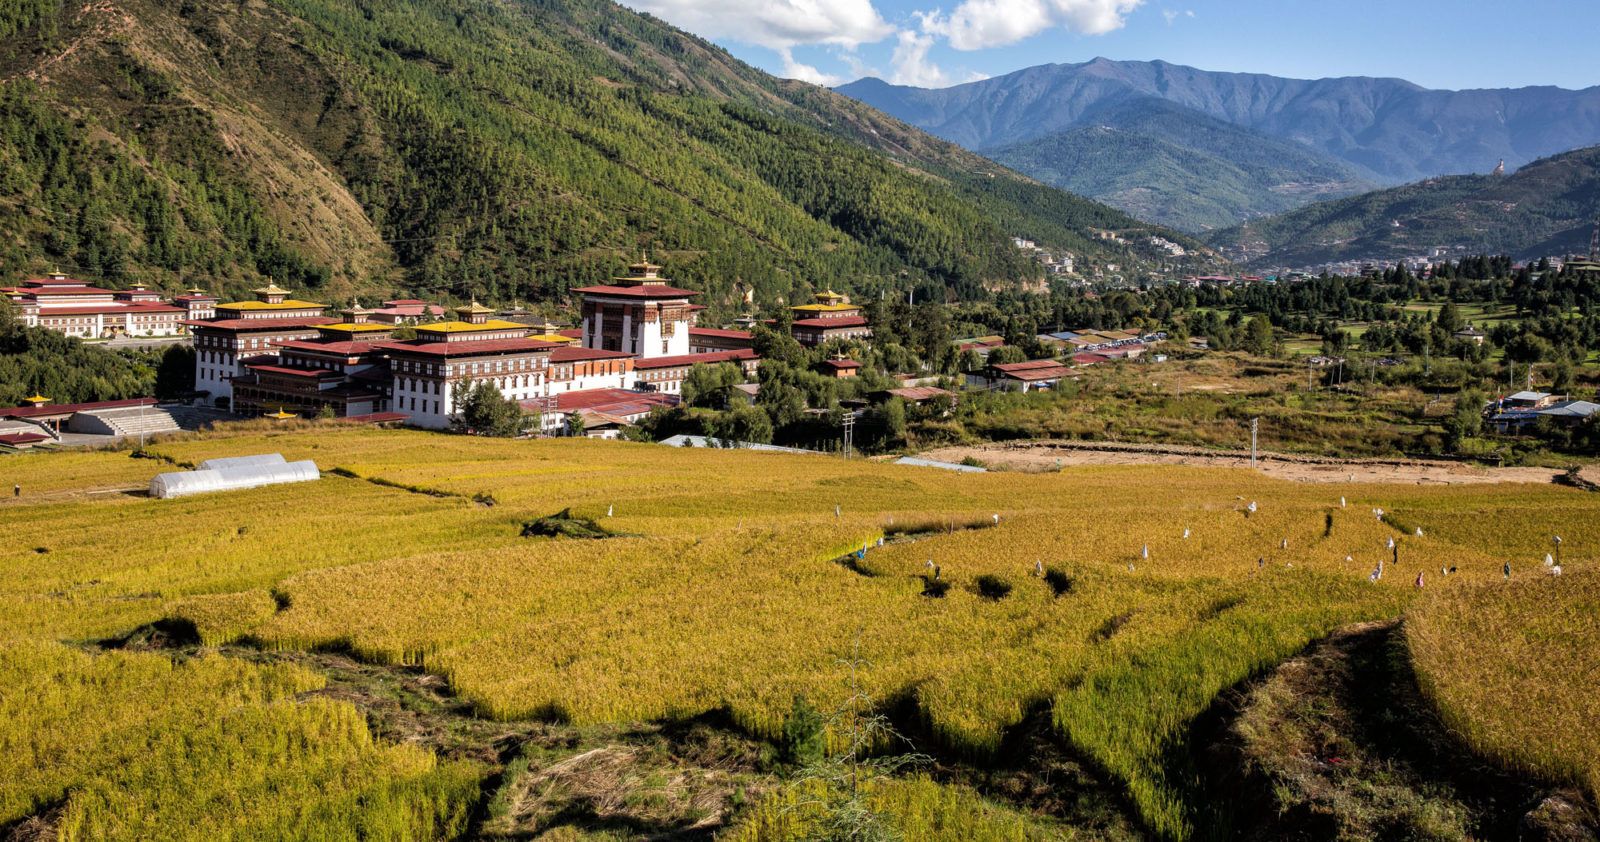 Bhutan Itinerary